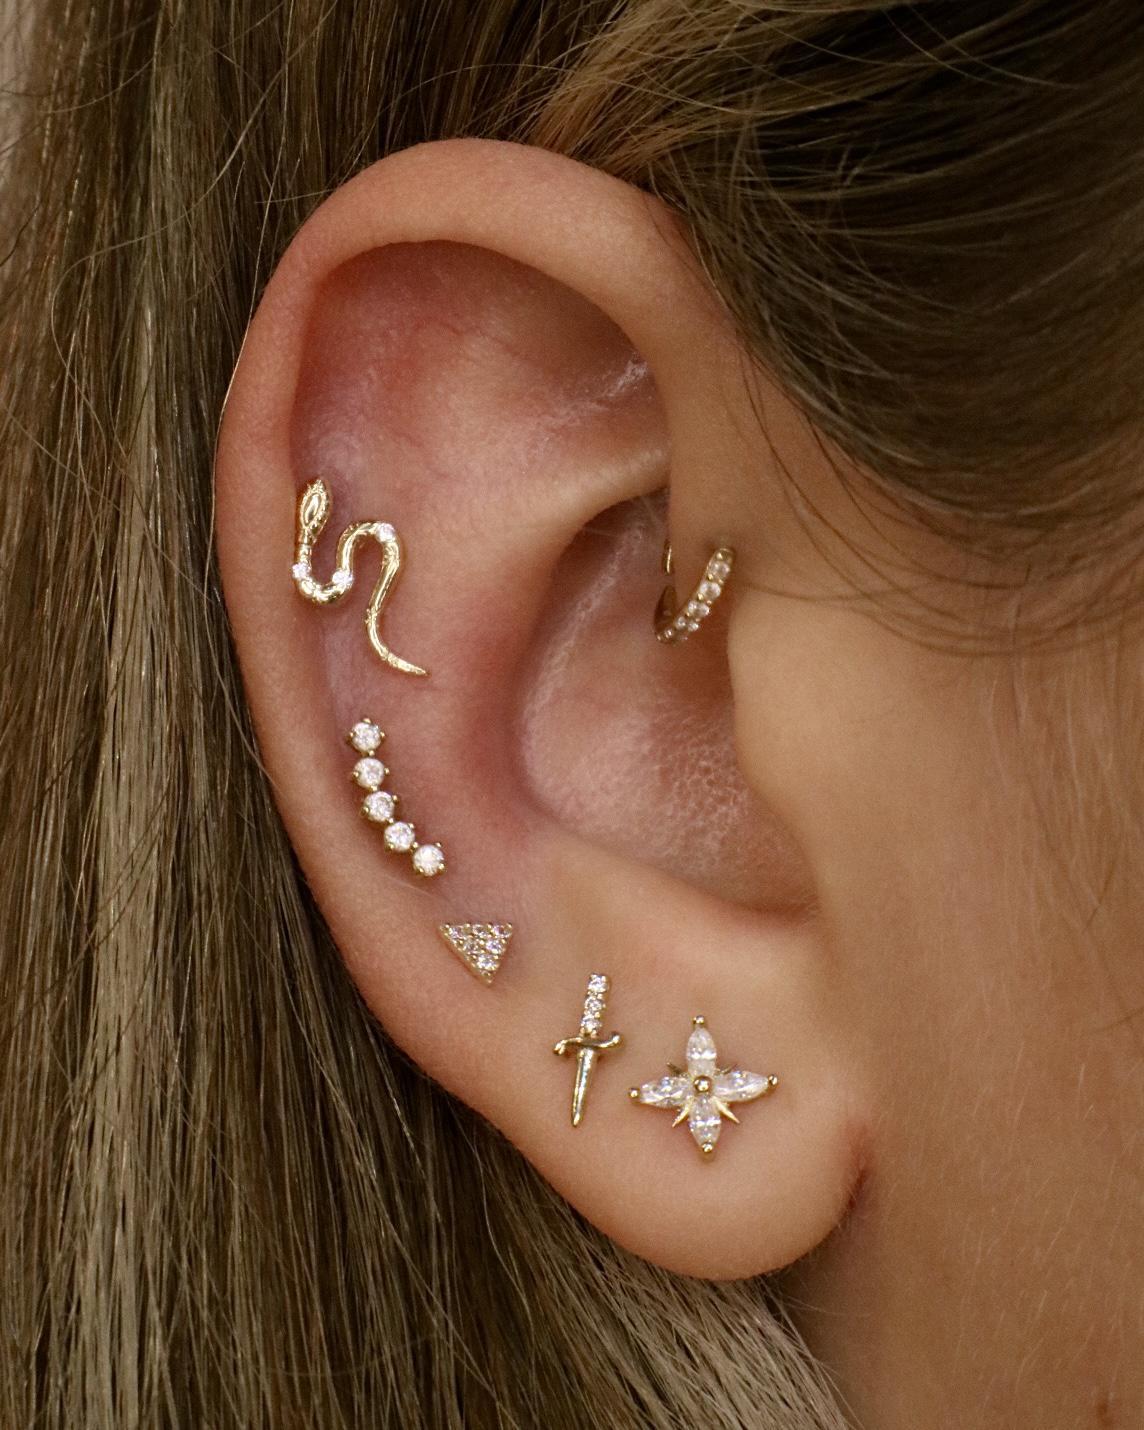 14k North Star Single Earring - Lulu Ave Body Jewelery